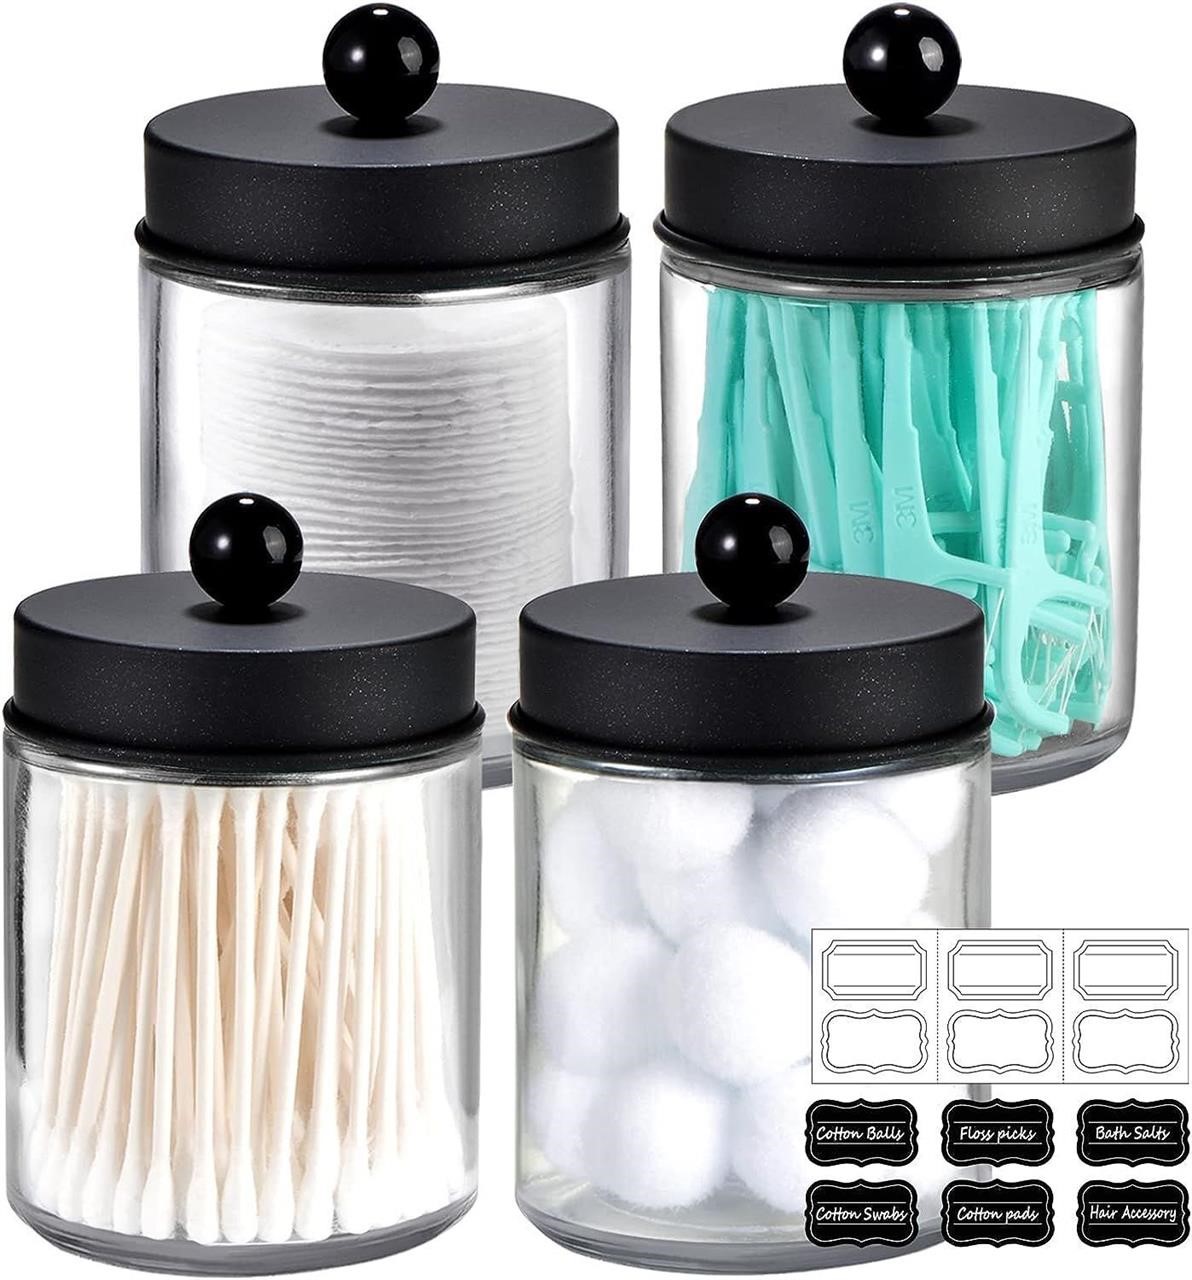 4 Pack Apothecary Jars Bathroom Vanity Storage Org